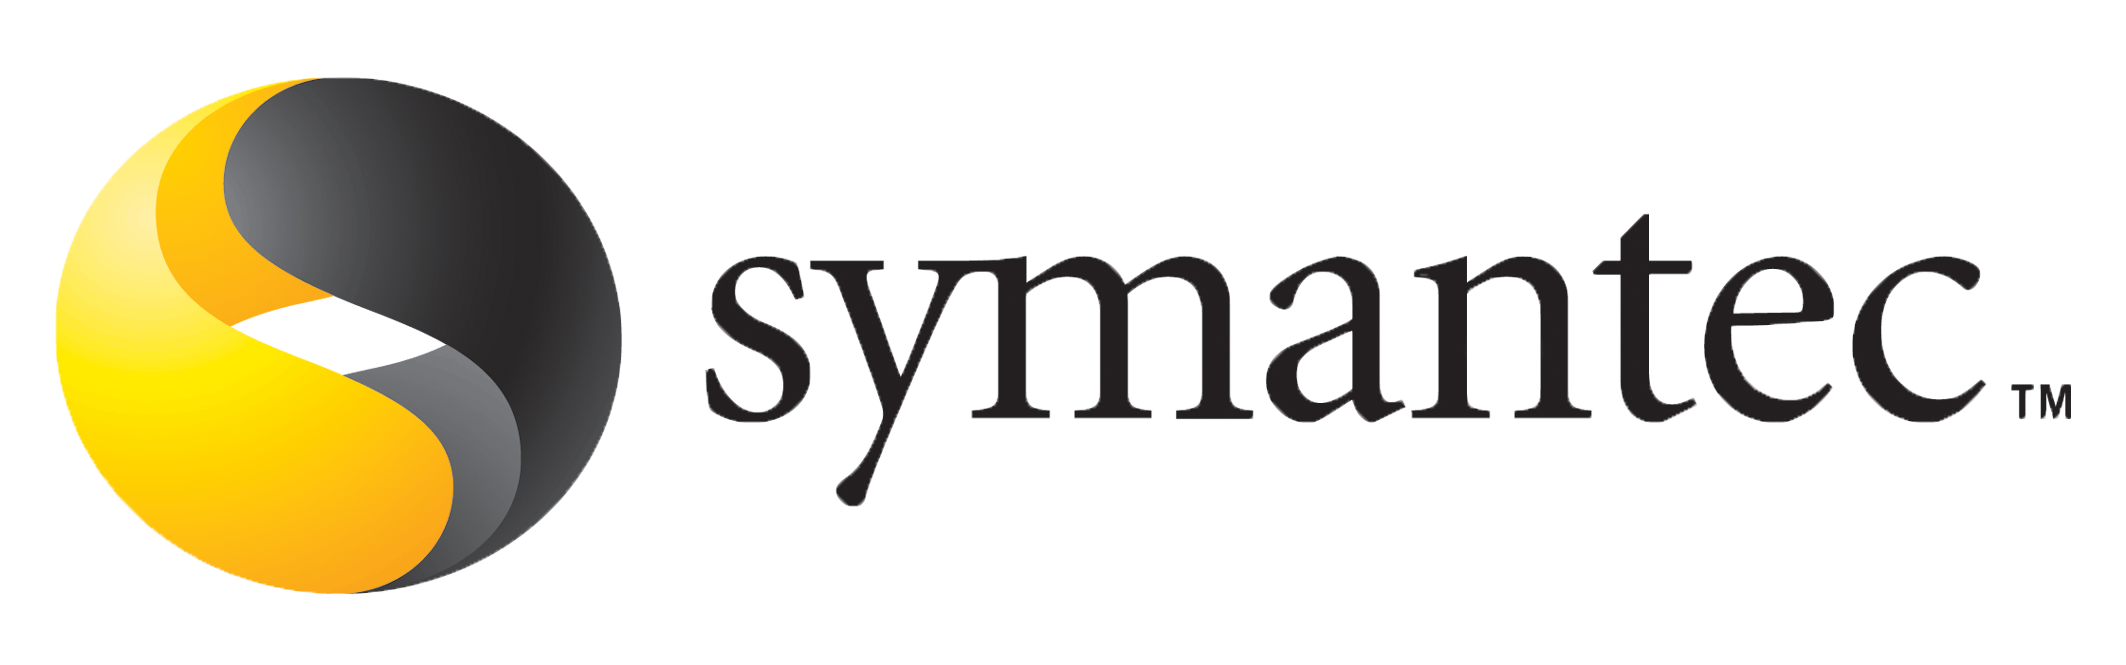 капитализация компании Symantec 